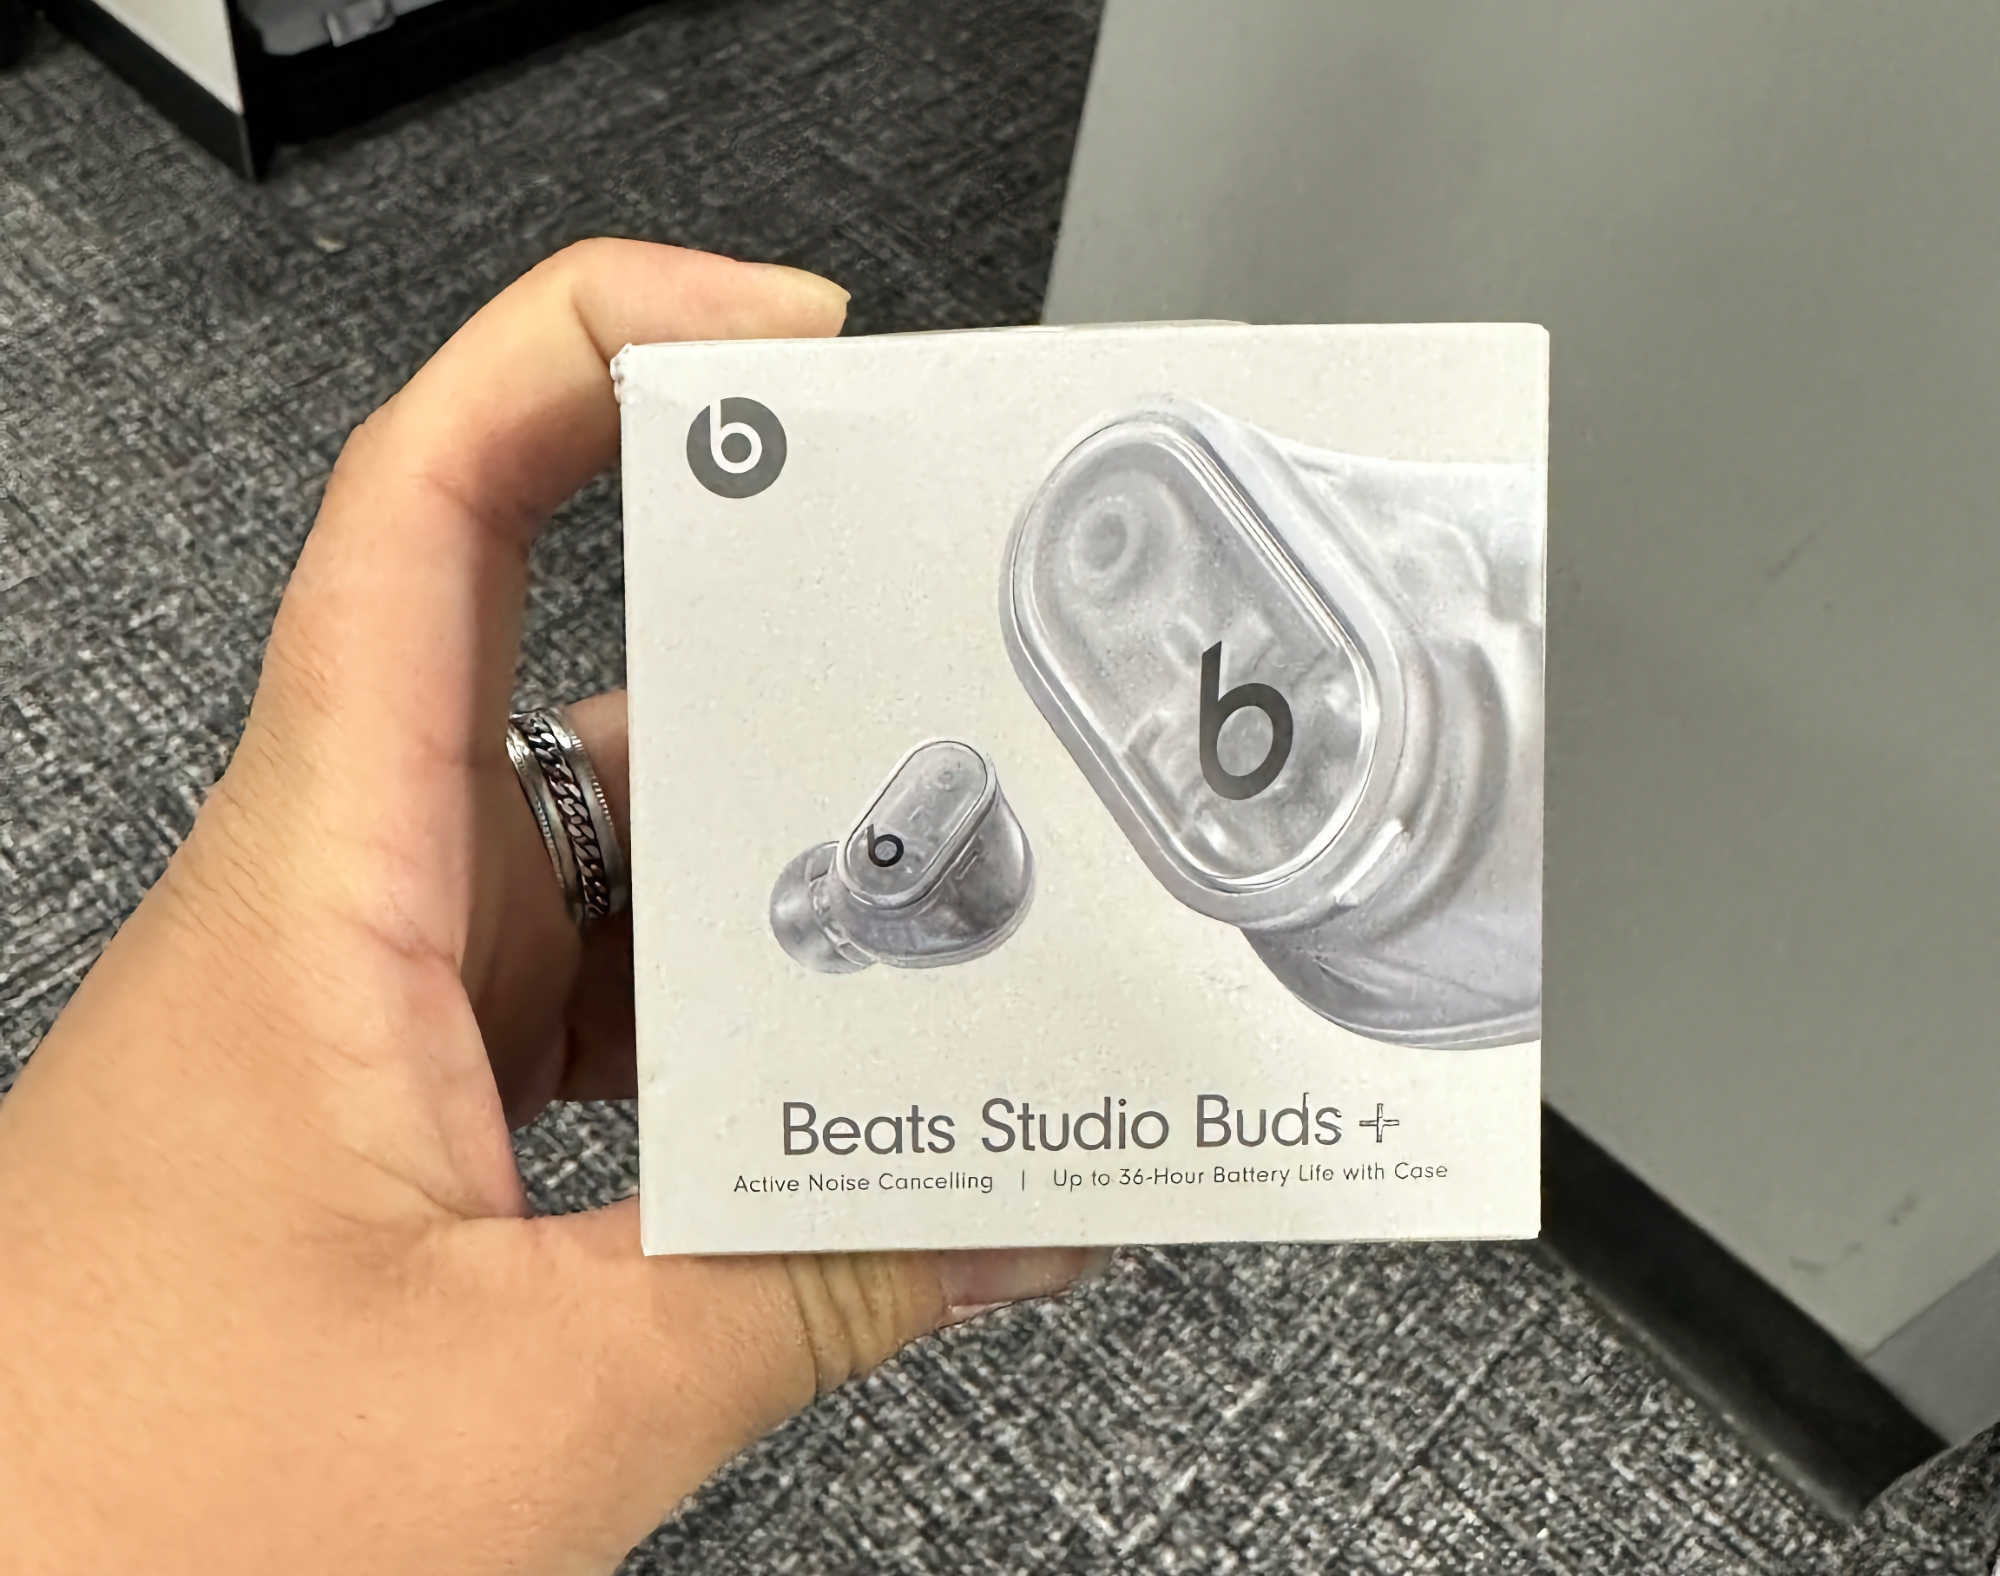 Beats Studio Buds+ gespot bij Best Buy: transparant ontwerp, verbeterde ANC en tot 36 uur batterijduur